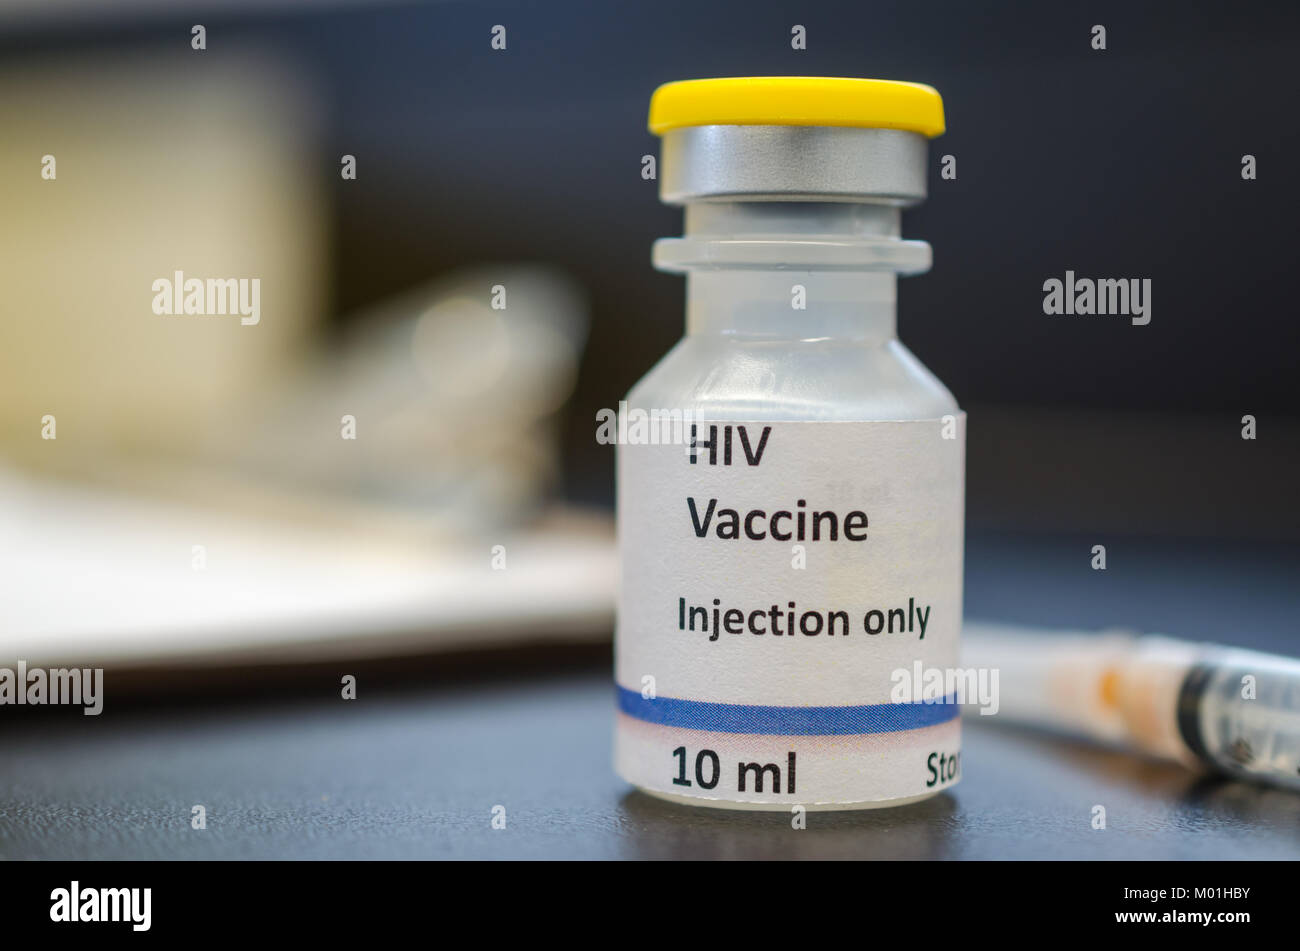 Flacon de vaccin contre le VIH Banque D'Images